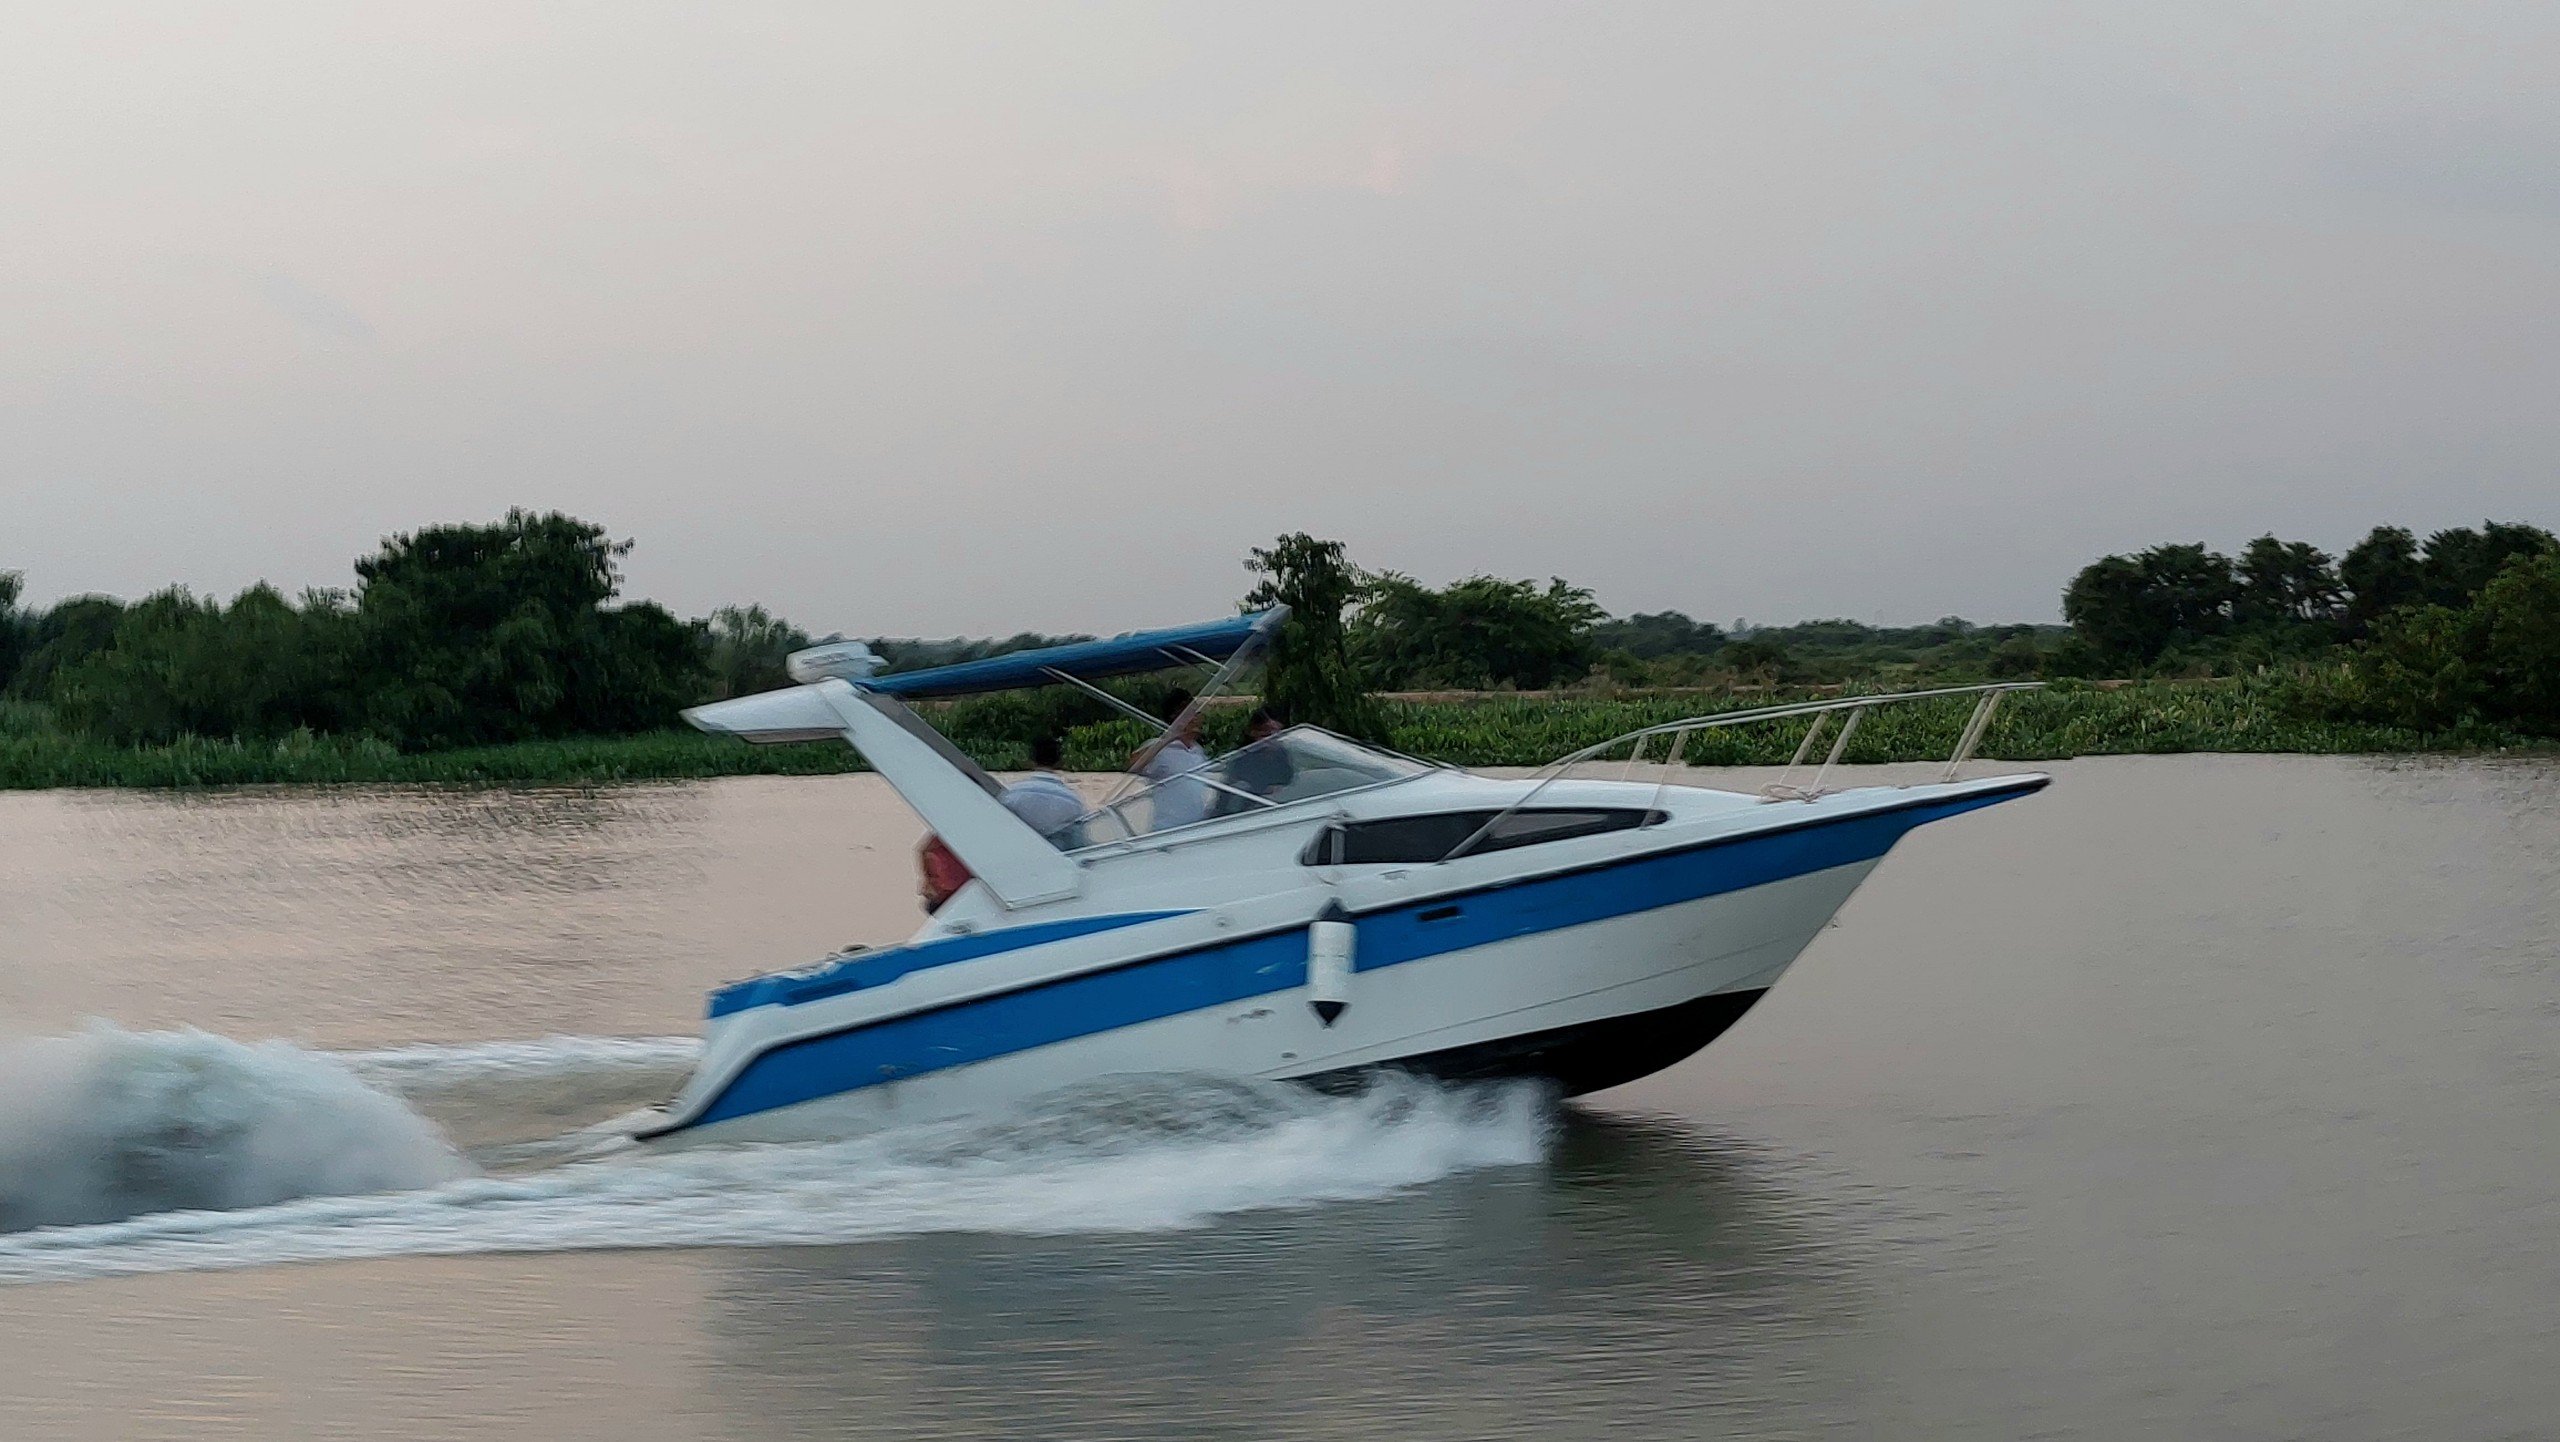 Tuyến du lịch đường sông với điểm đến Bình Dương là một trong những sản phẩm du lịch đường thủy mới của ngành du lịch TP. Hồ Chí Minh